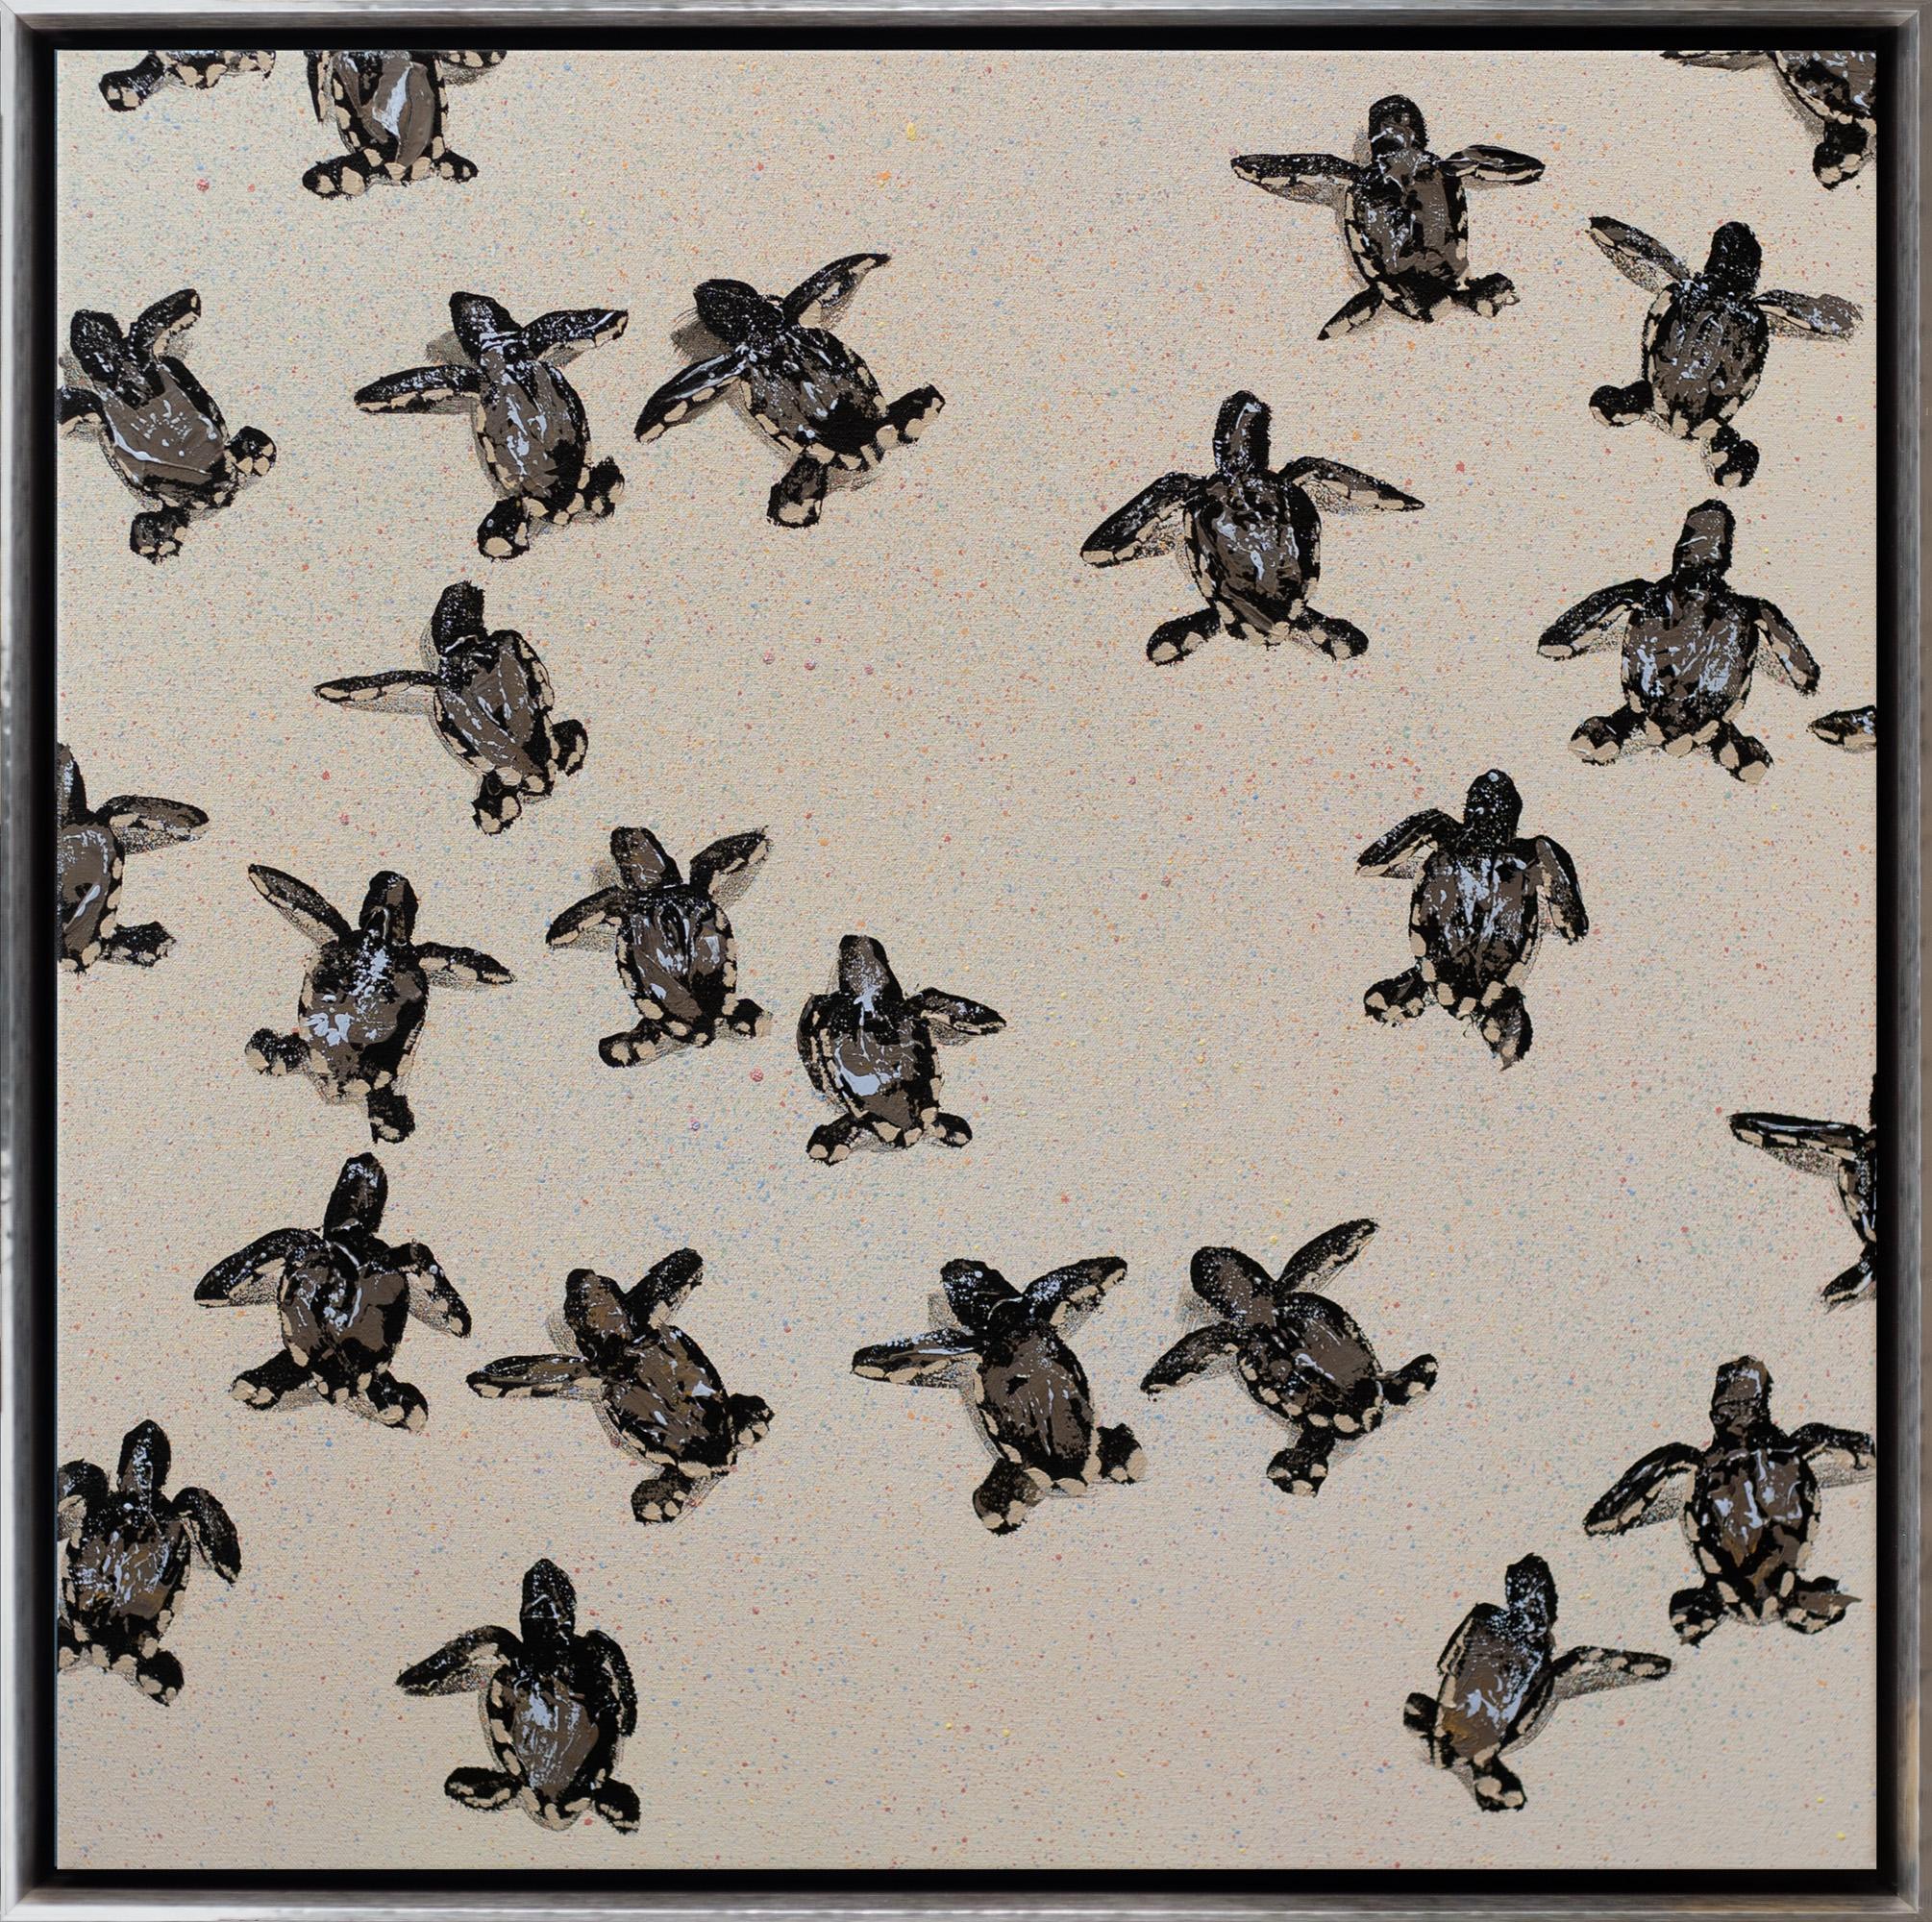 "Sea Turtles 3" Peinture contemporaine d'animaux à l'huile et à l'acrylique sur toile encadrée